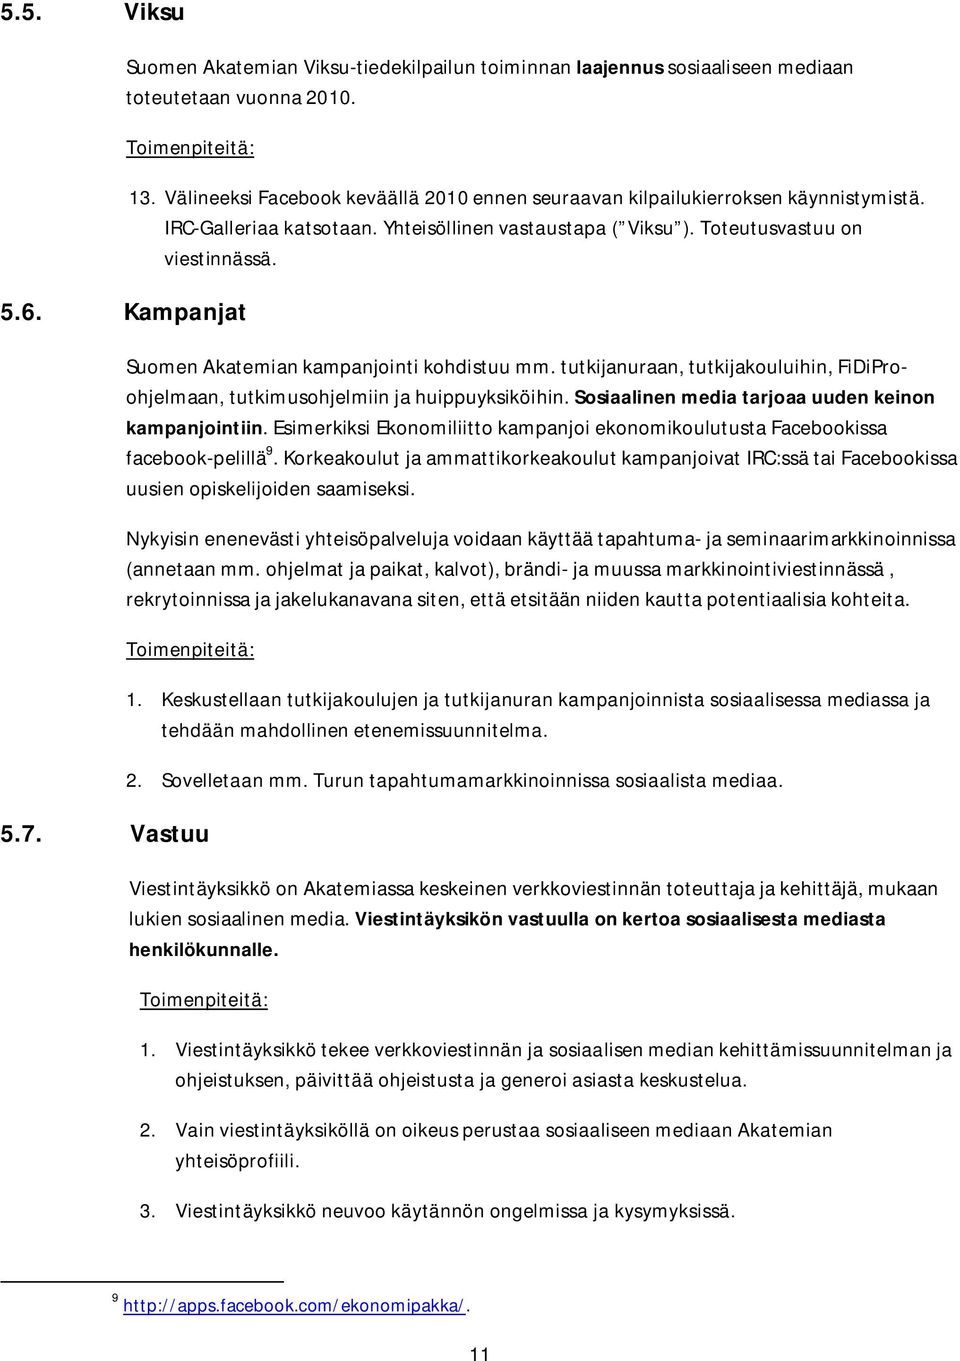 Suomen Akatemian kampanjointi kohdistuu mm. tutkijanuraan, tutkijakouluihin, FiDiProohjelmaan, tutkimusohjelmiin ja huippuyksiköihin. Sosiaalinen media tarjoaa uuden keinon kampanjointiin.